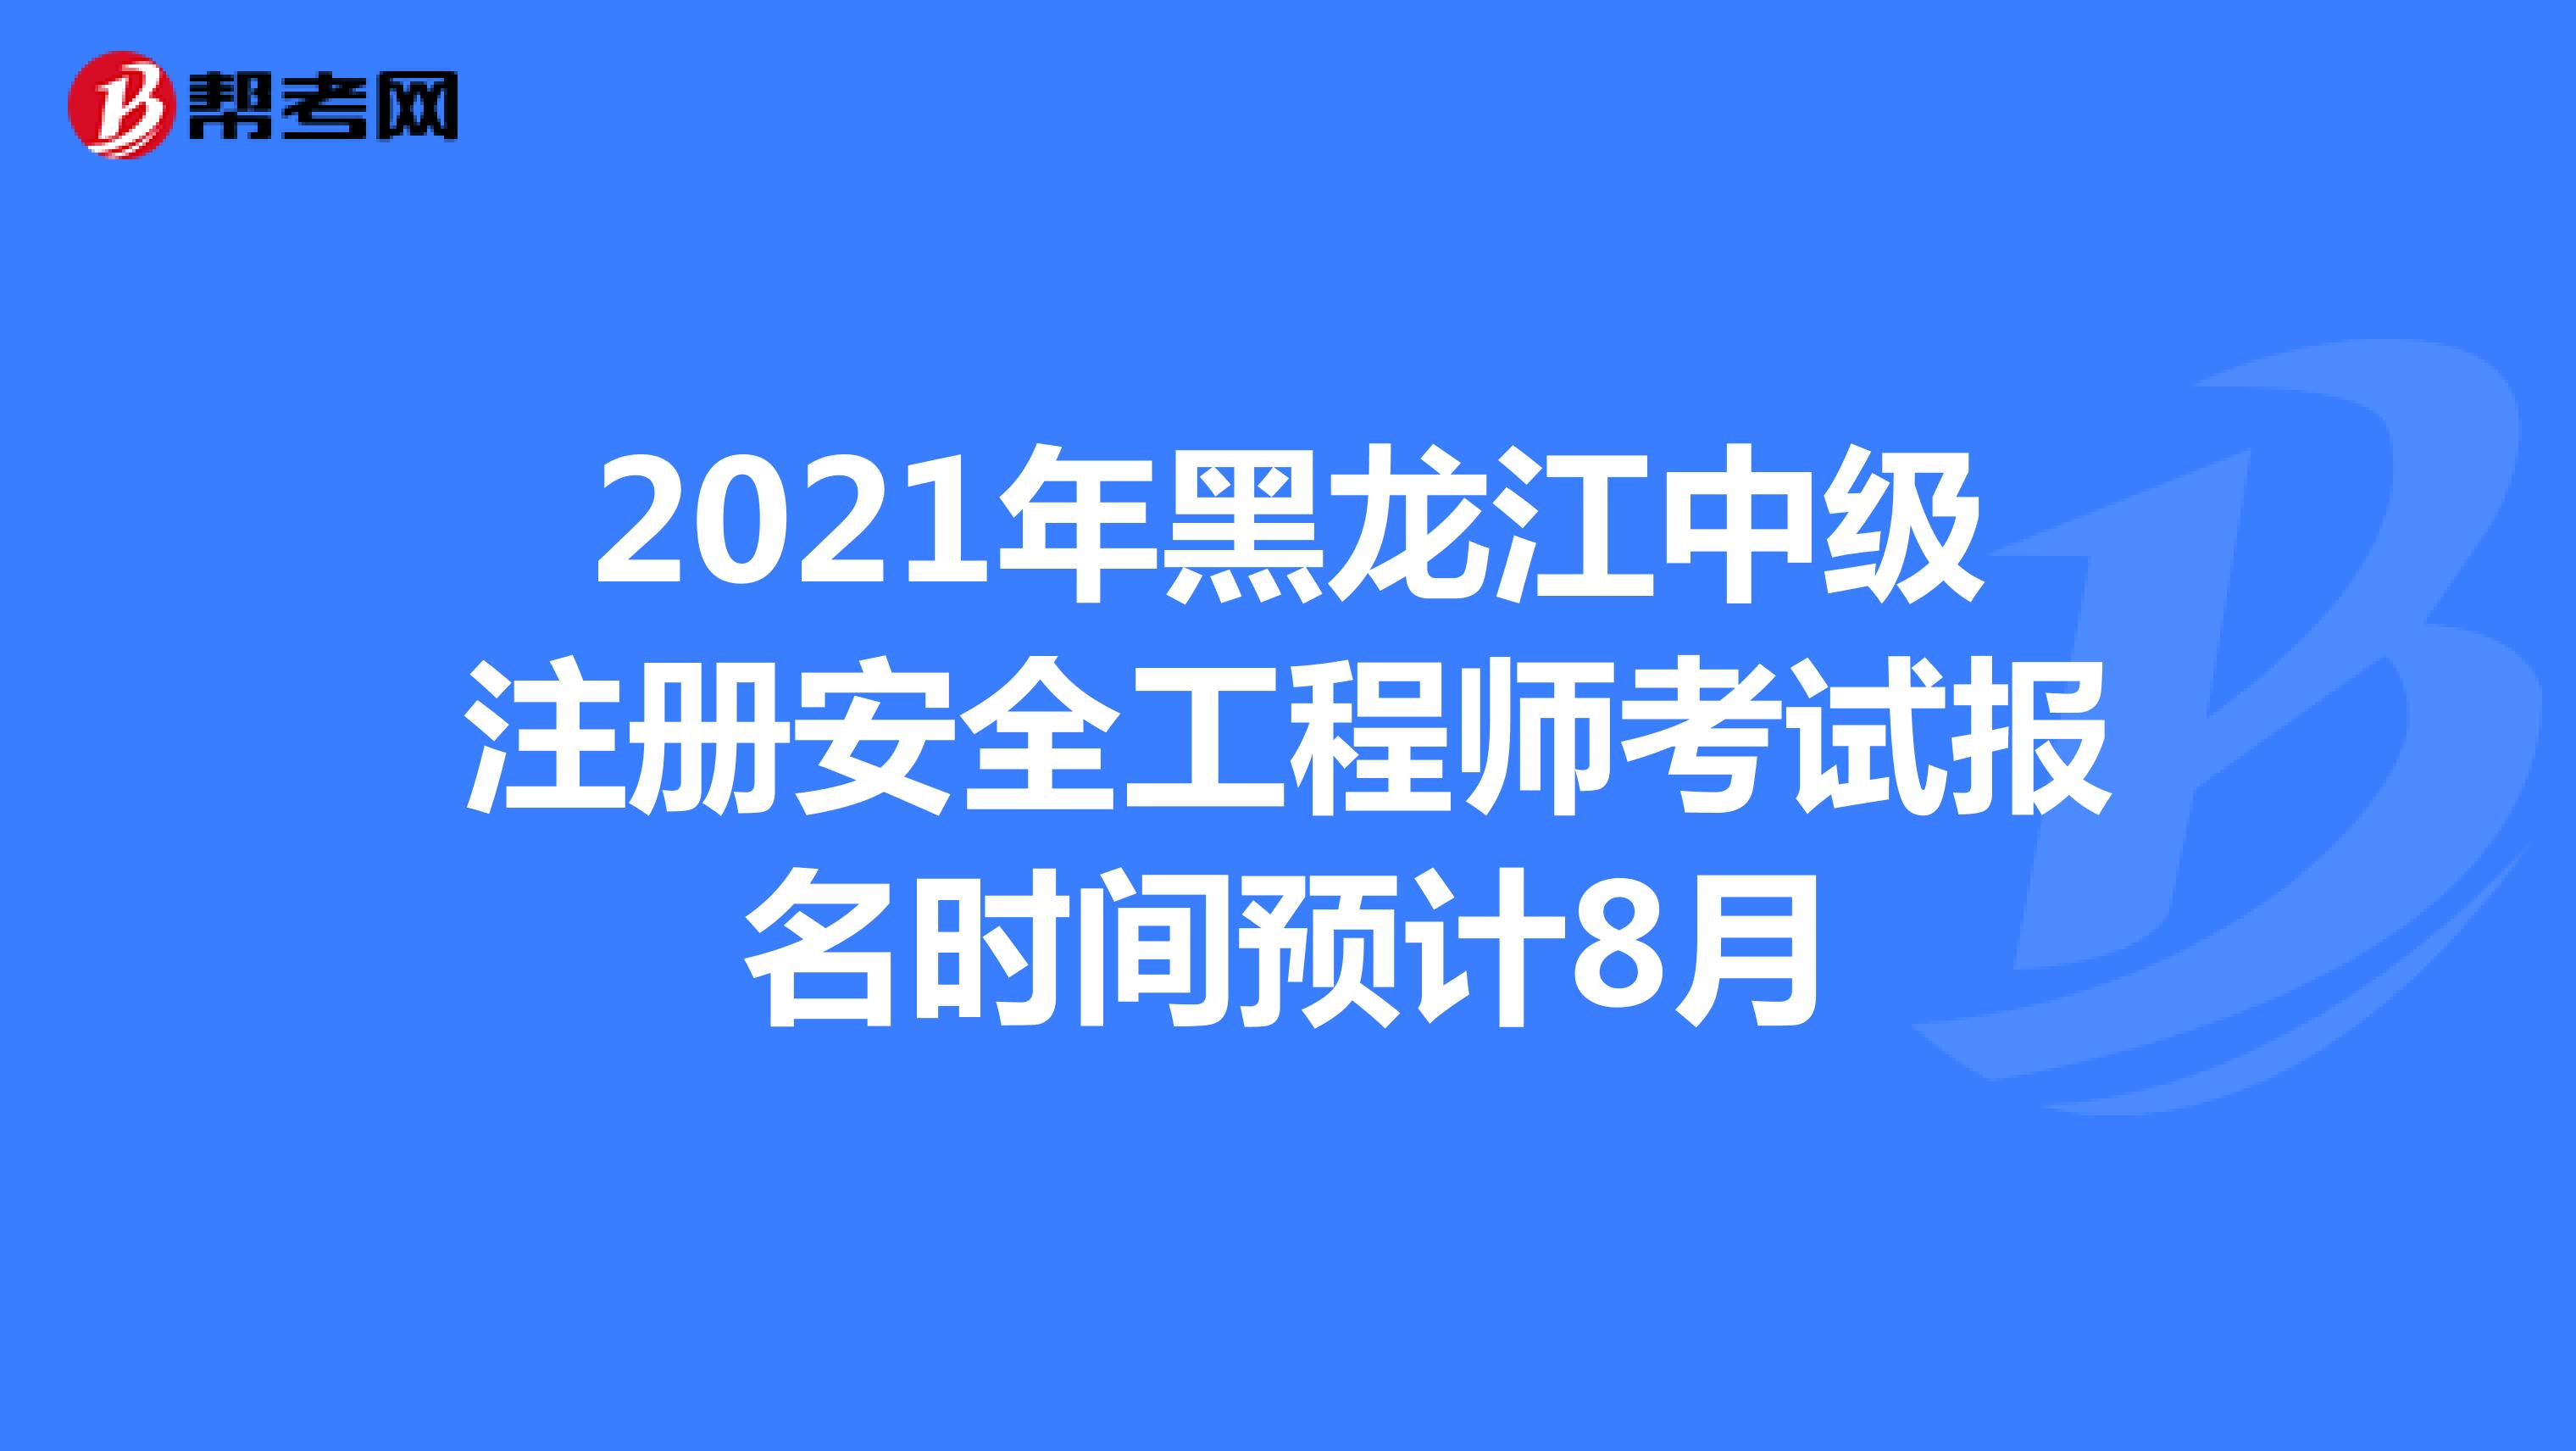 2021年黑龙江中级注册安全工程师考试报名时间预计8月